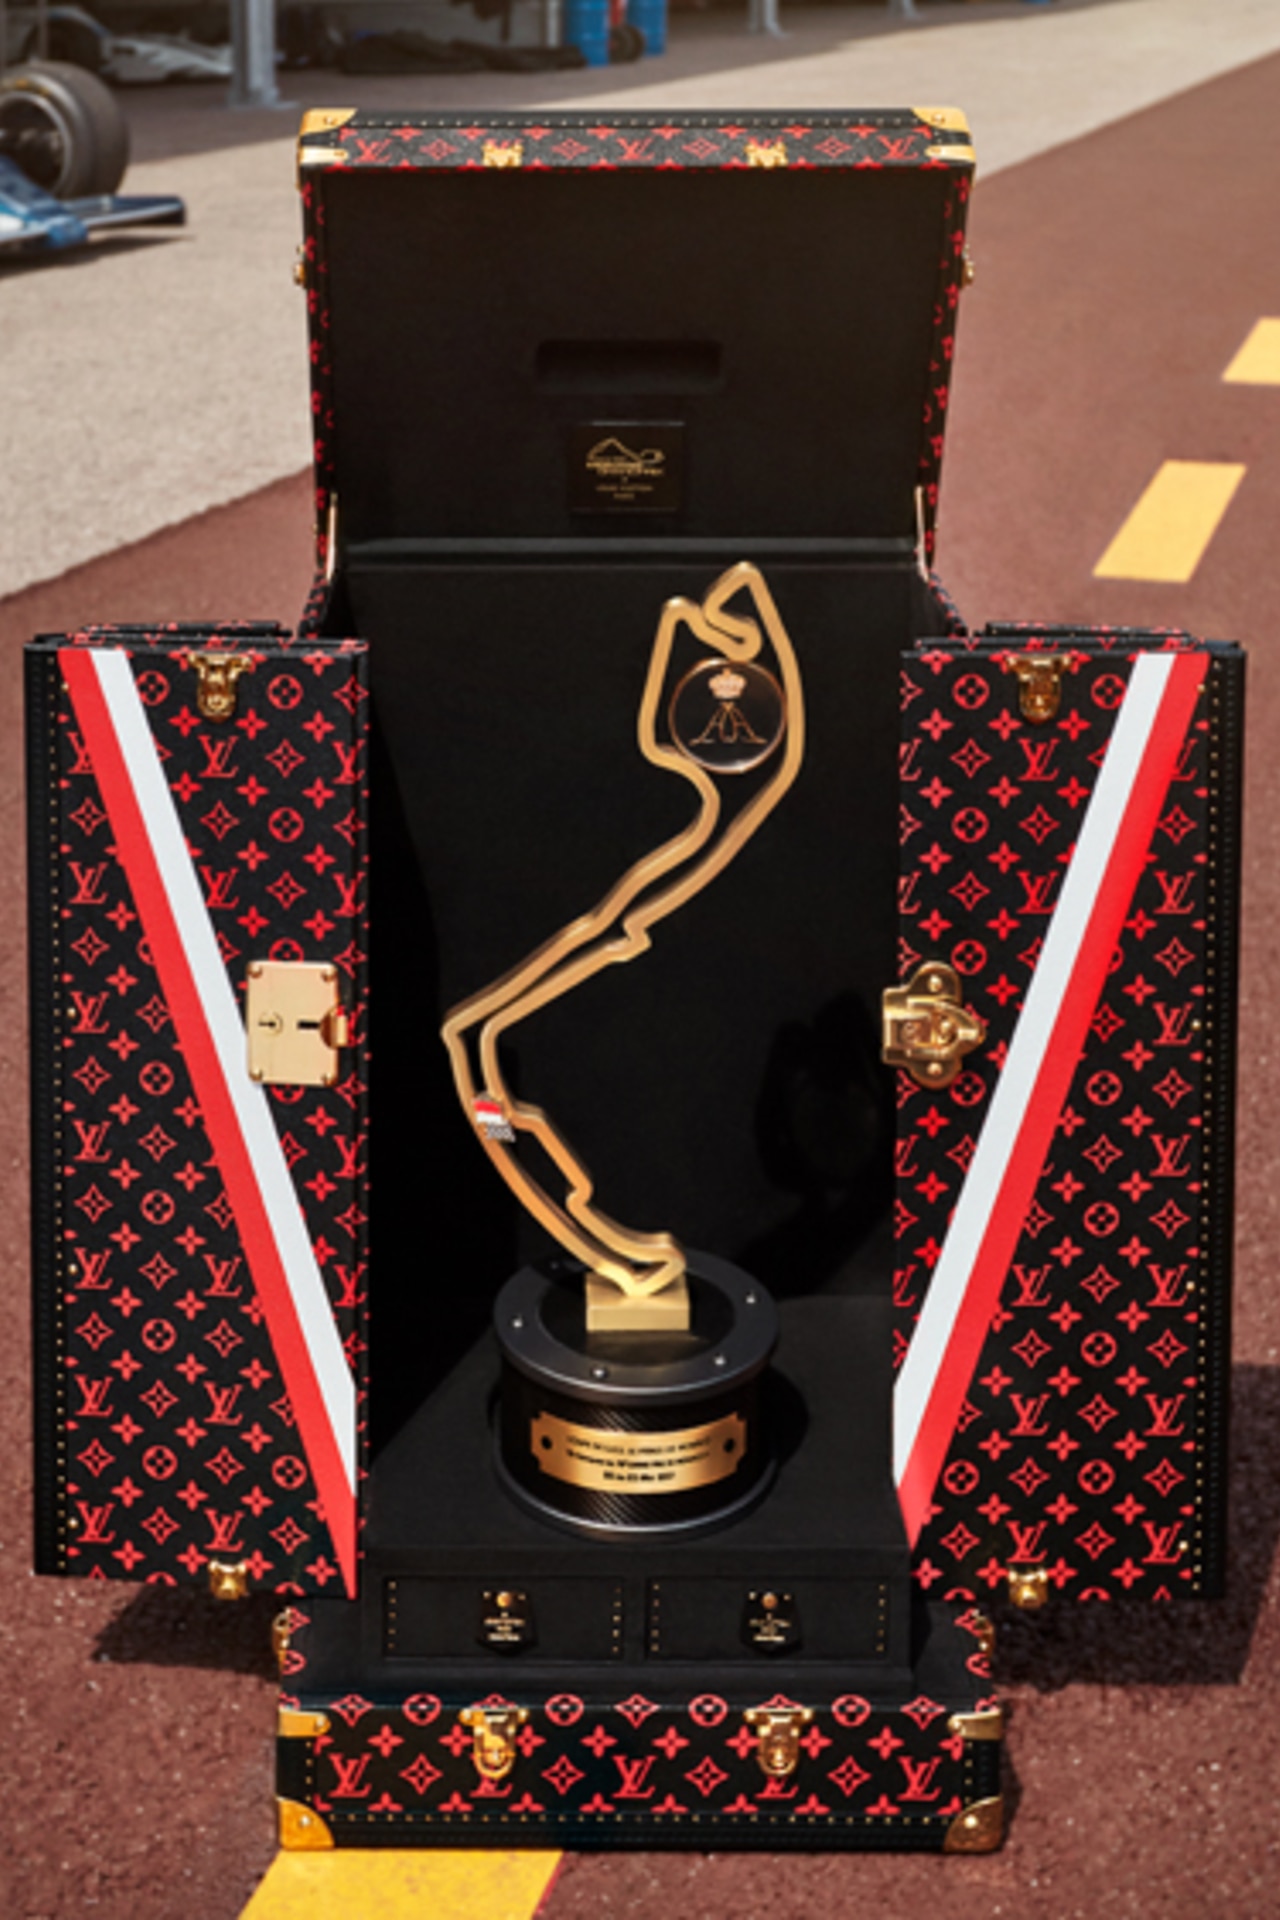 Louis Vuitton's Formula 1 Grand Prix de Monaco Trophy Case